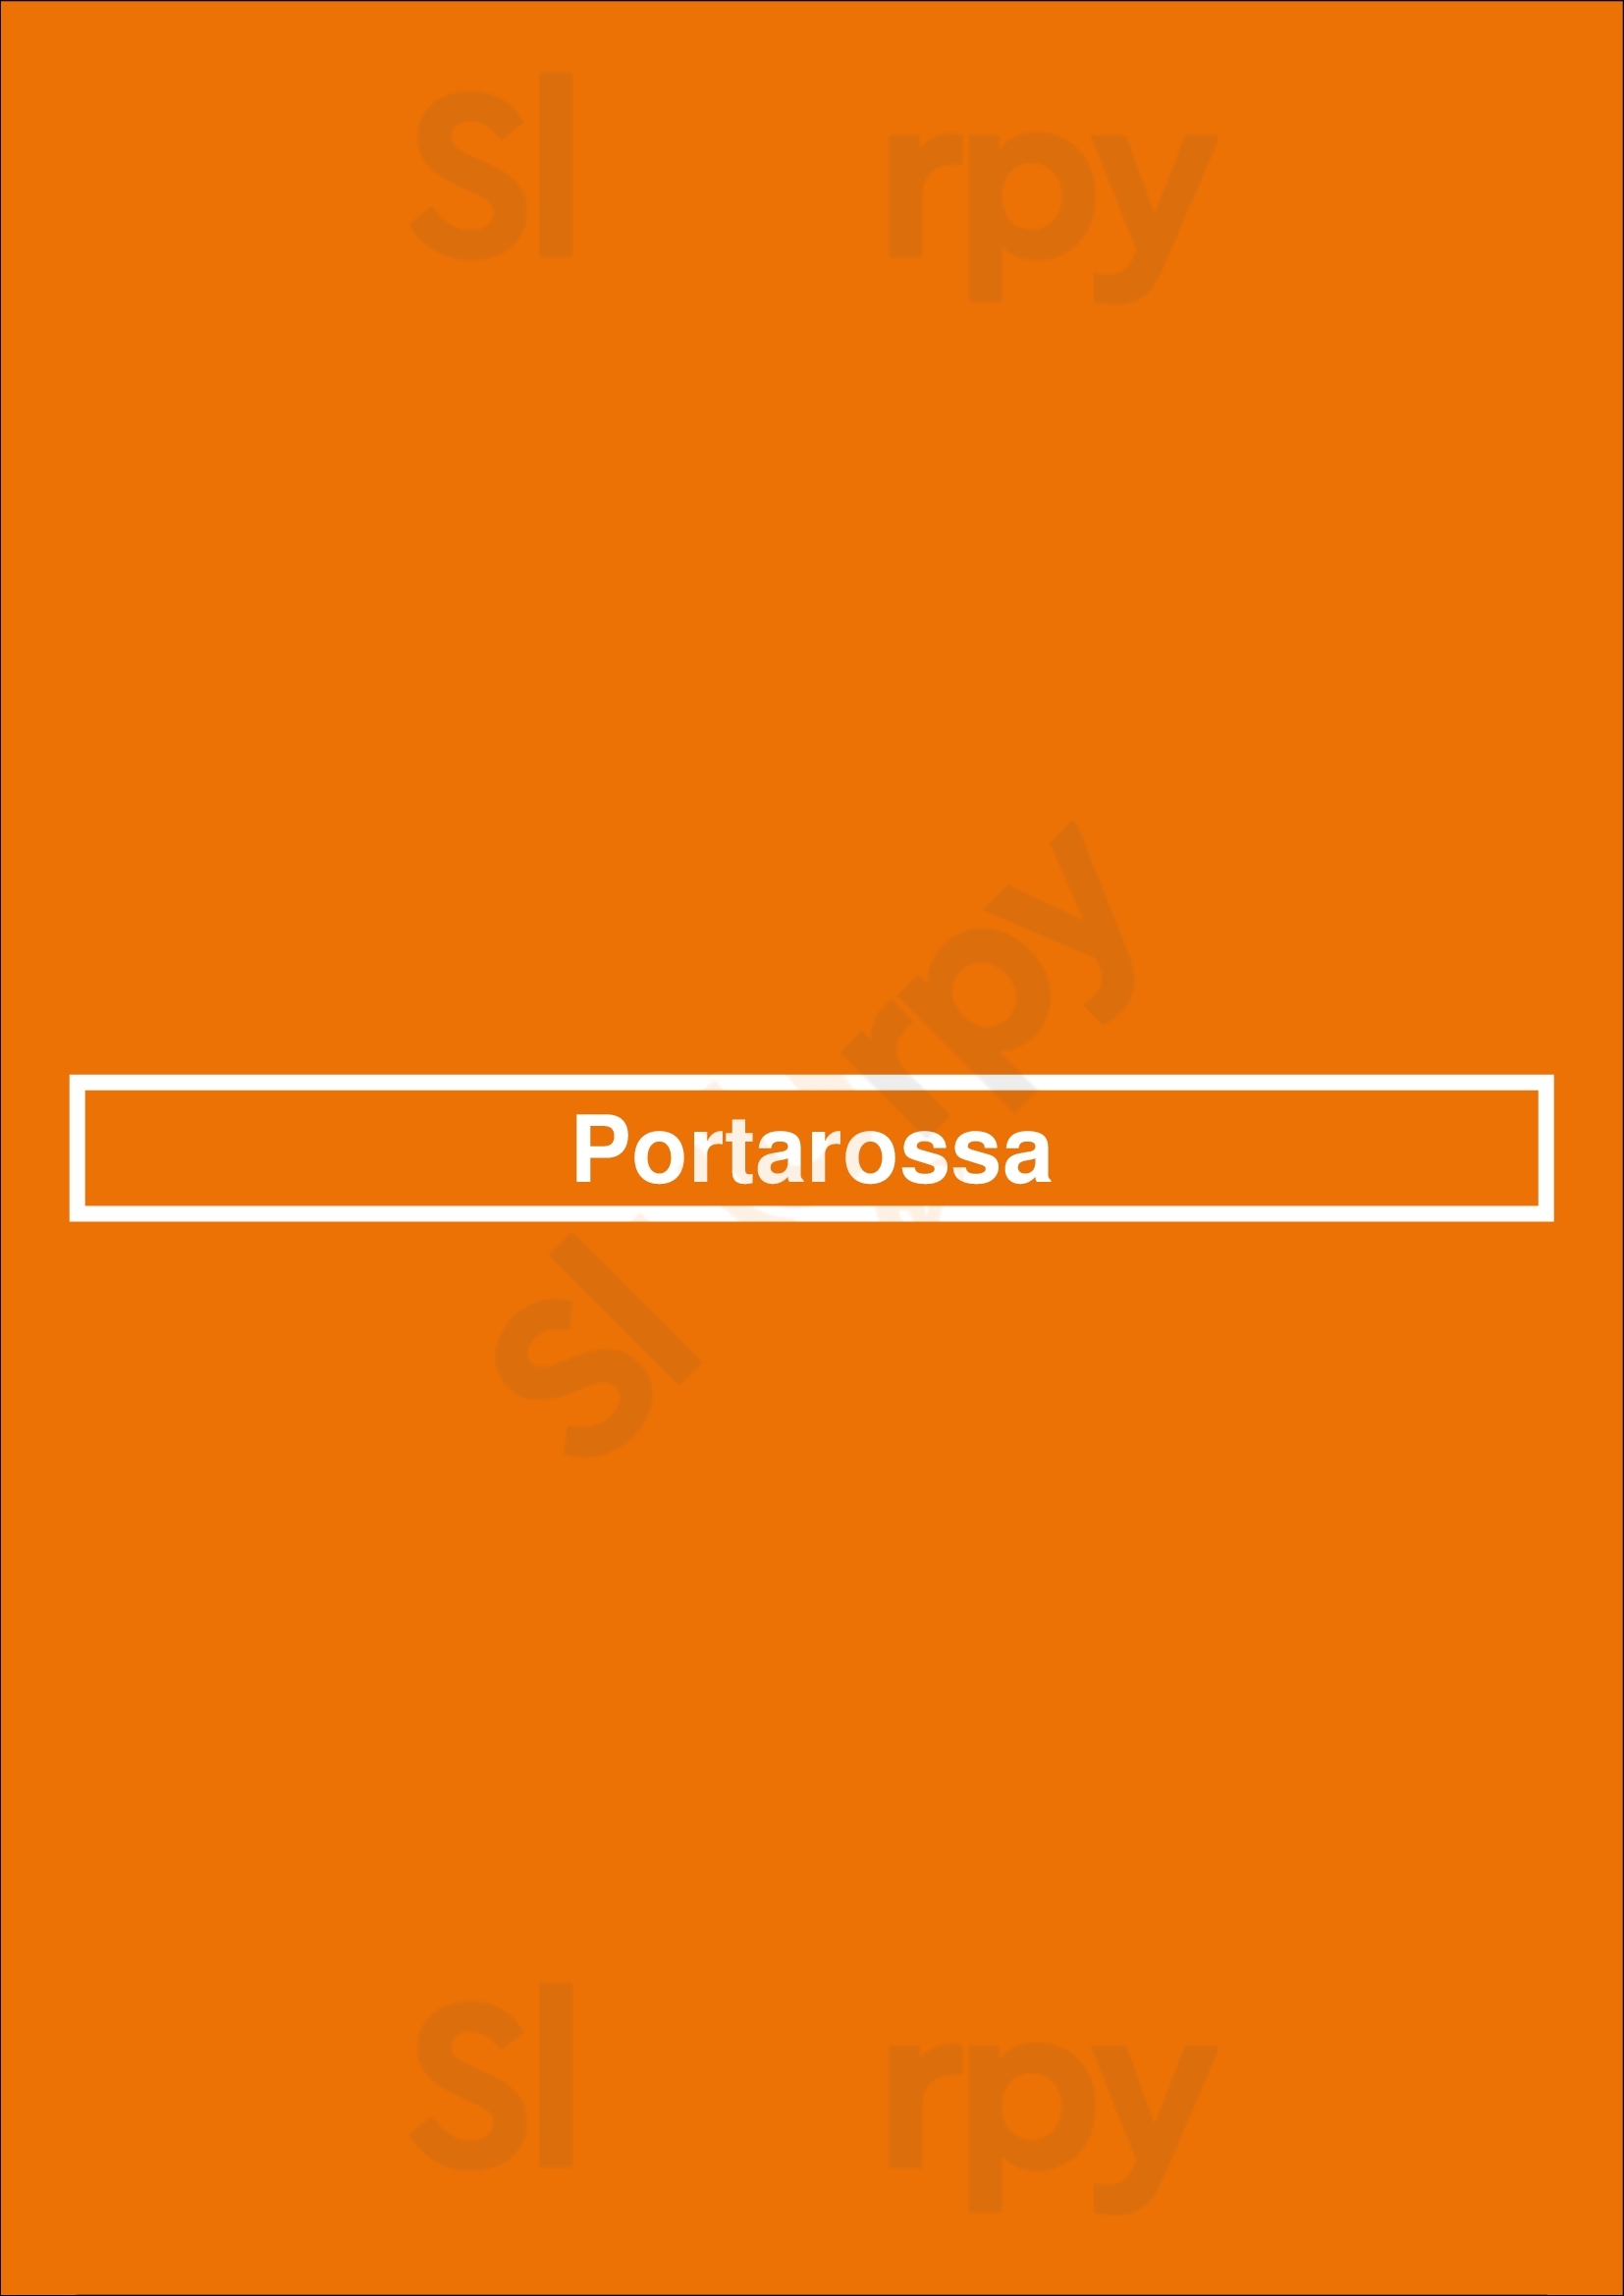 Portarossa Porto Menu - 1